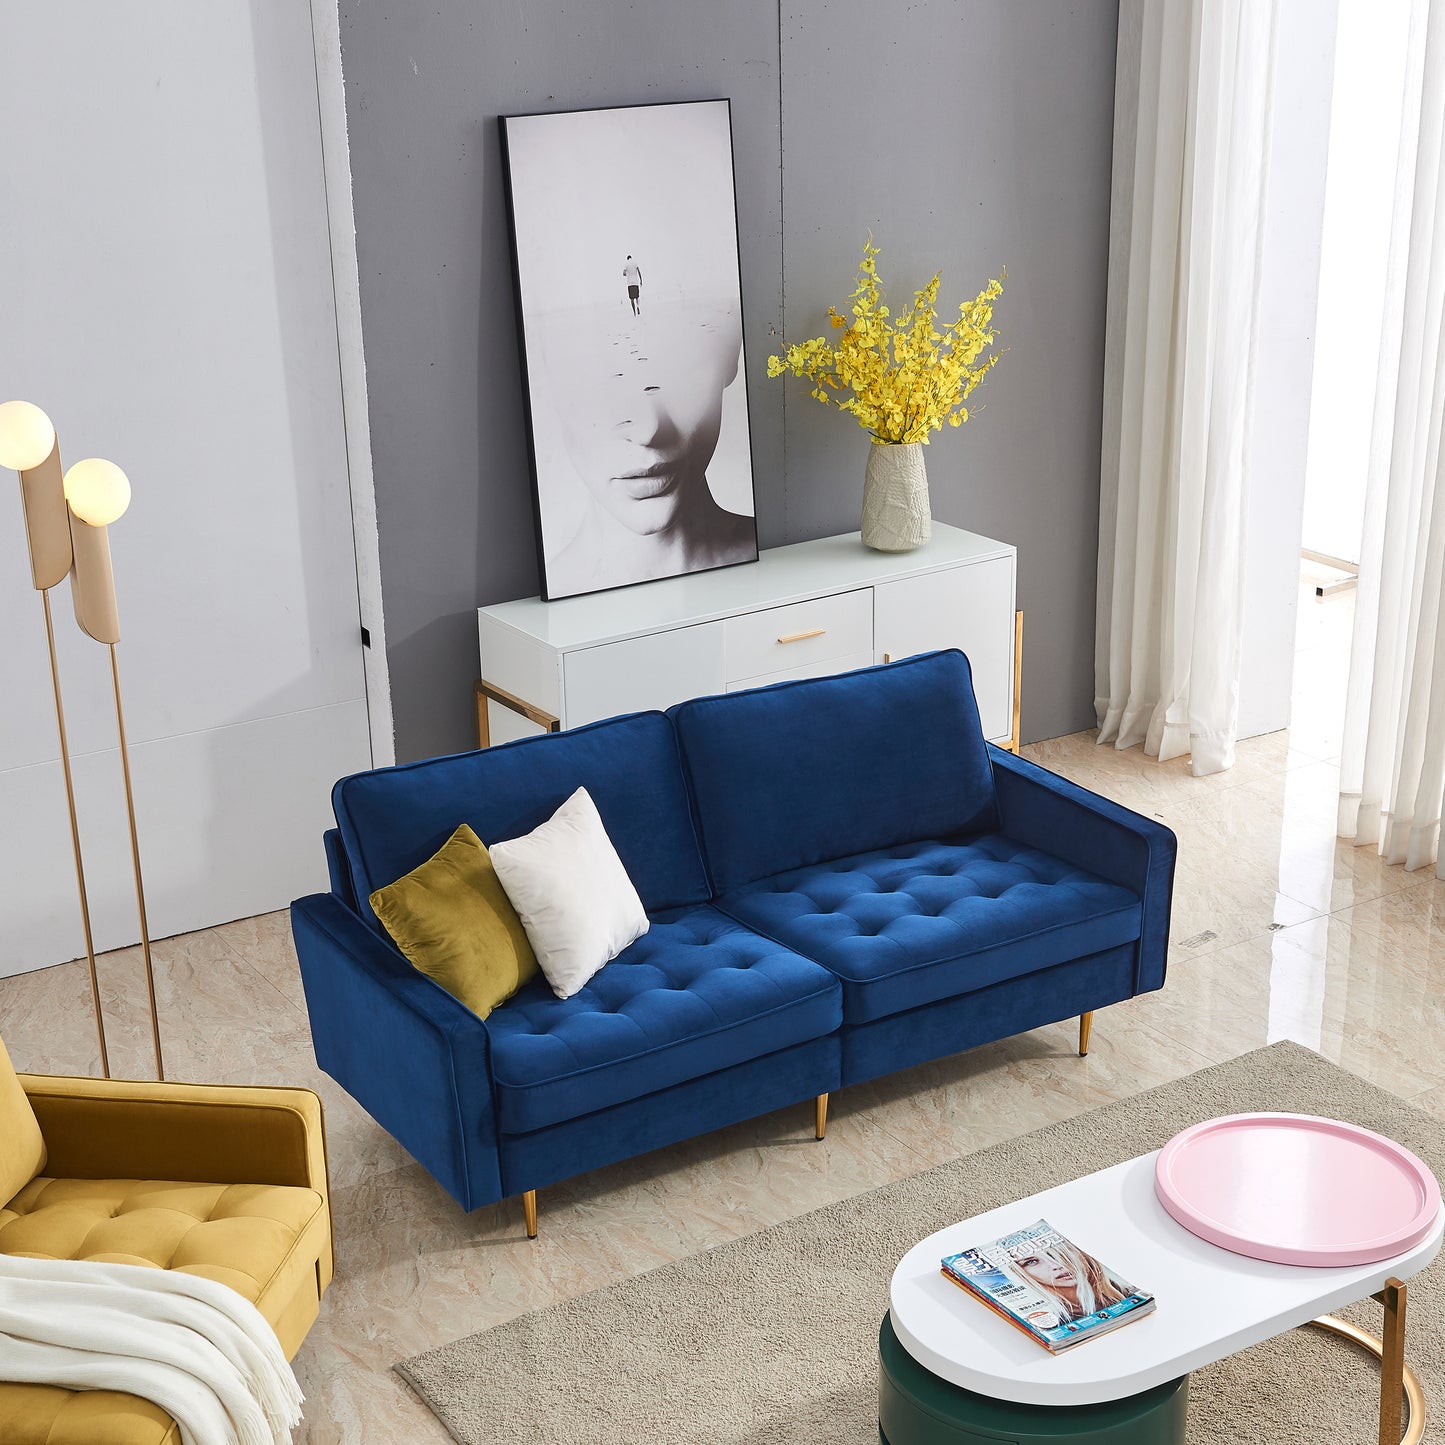 Esmay Velvet Sofa w/Pillows Blue